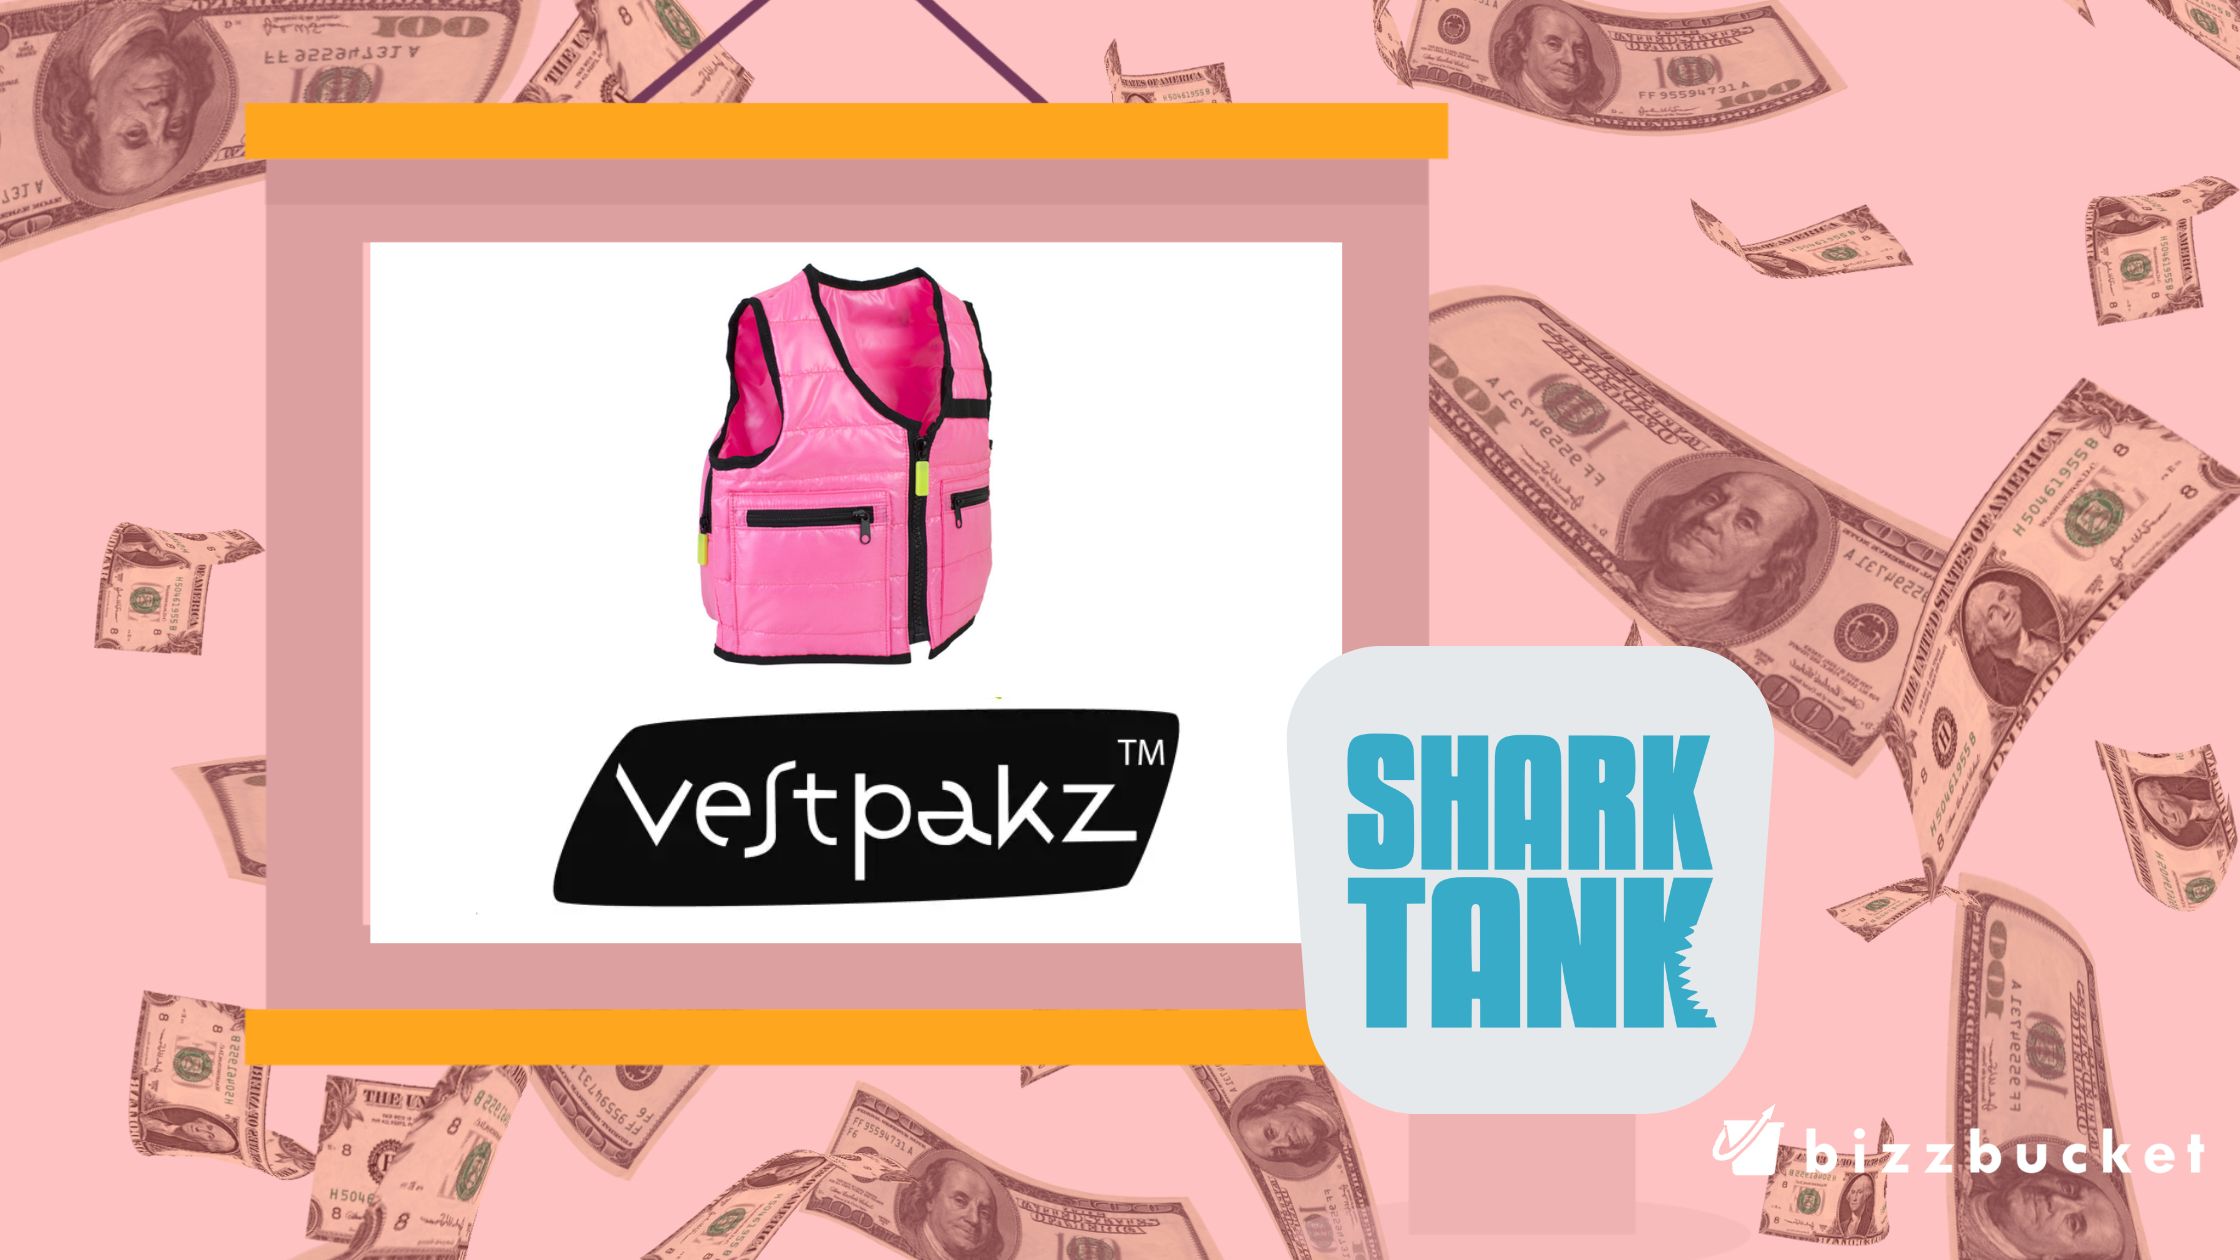 Vestpakz Shark Tank Update